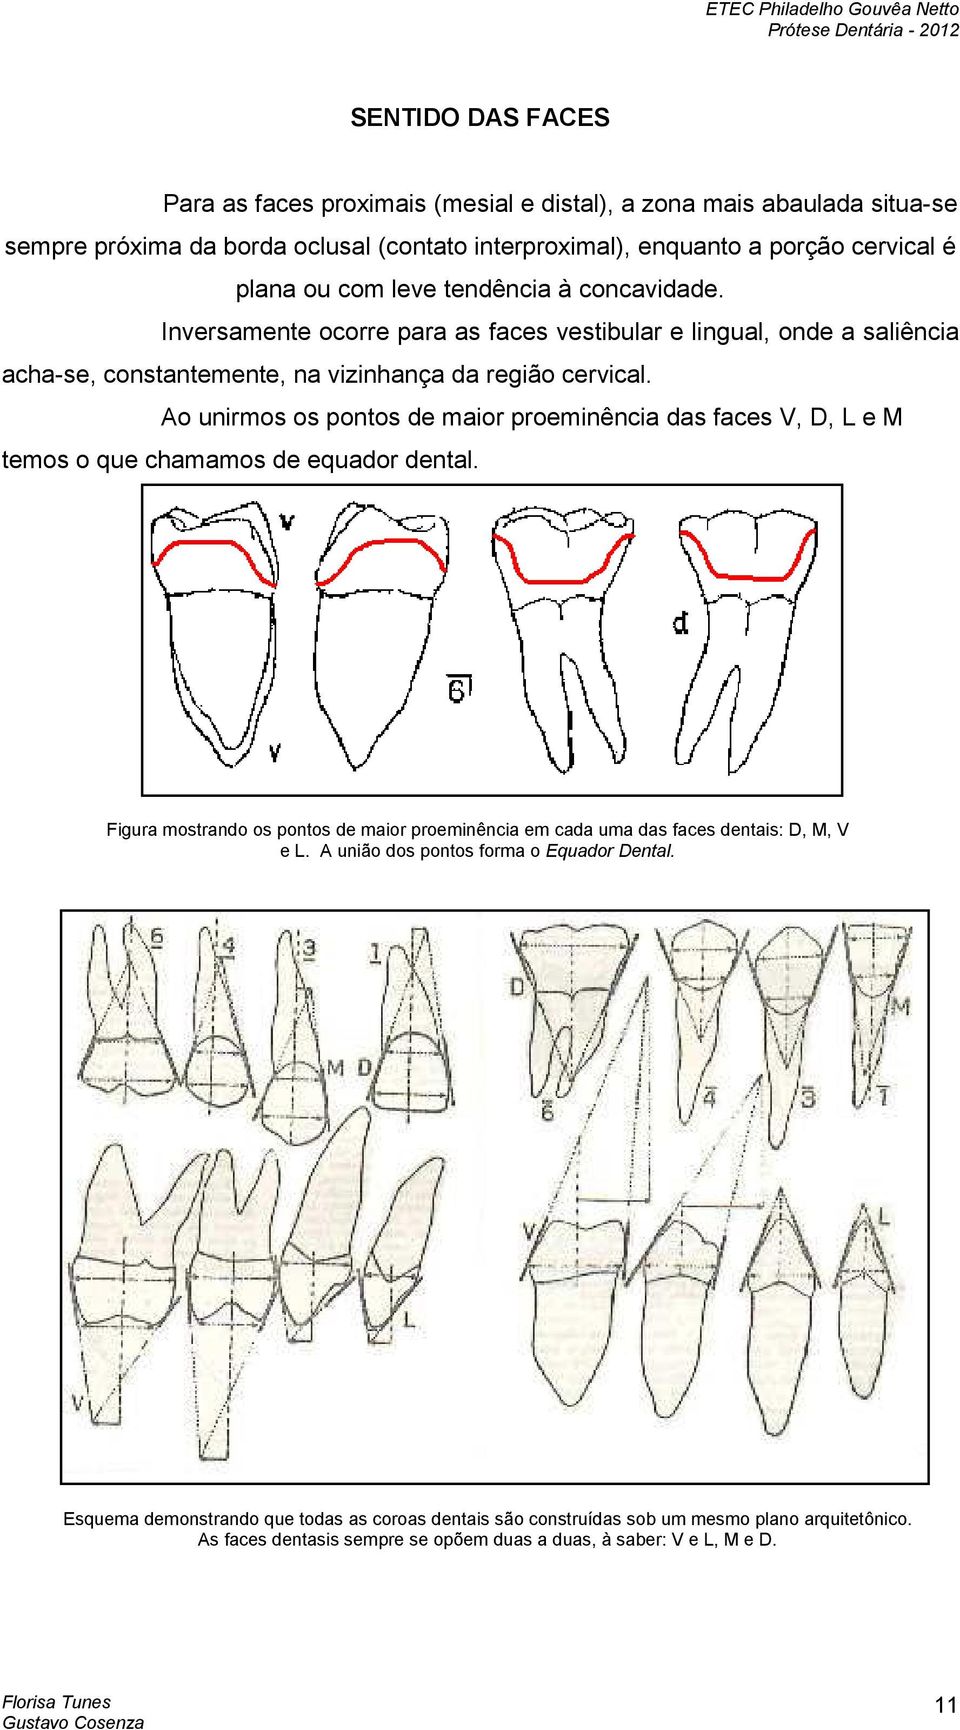 Ao unirmos os pontos de maior proeminência das faces V, D, L e M temos o que chamamos de equador dental.